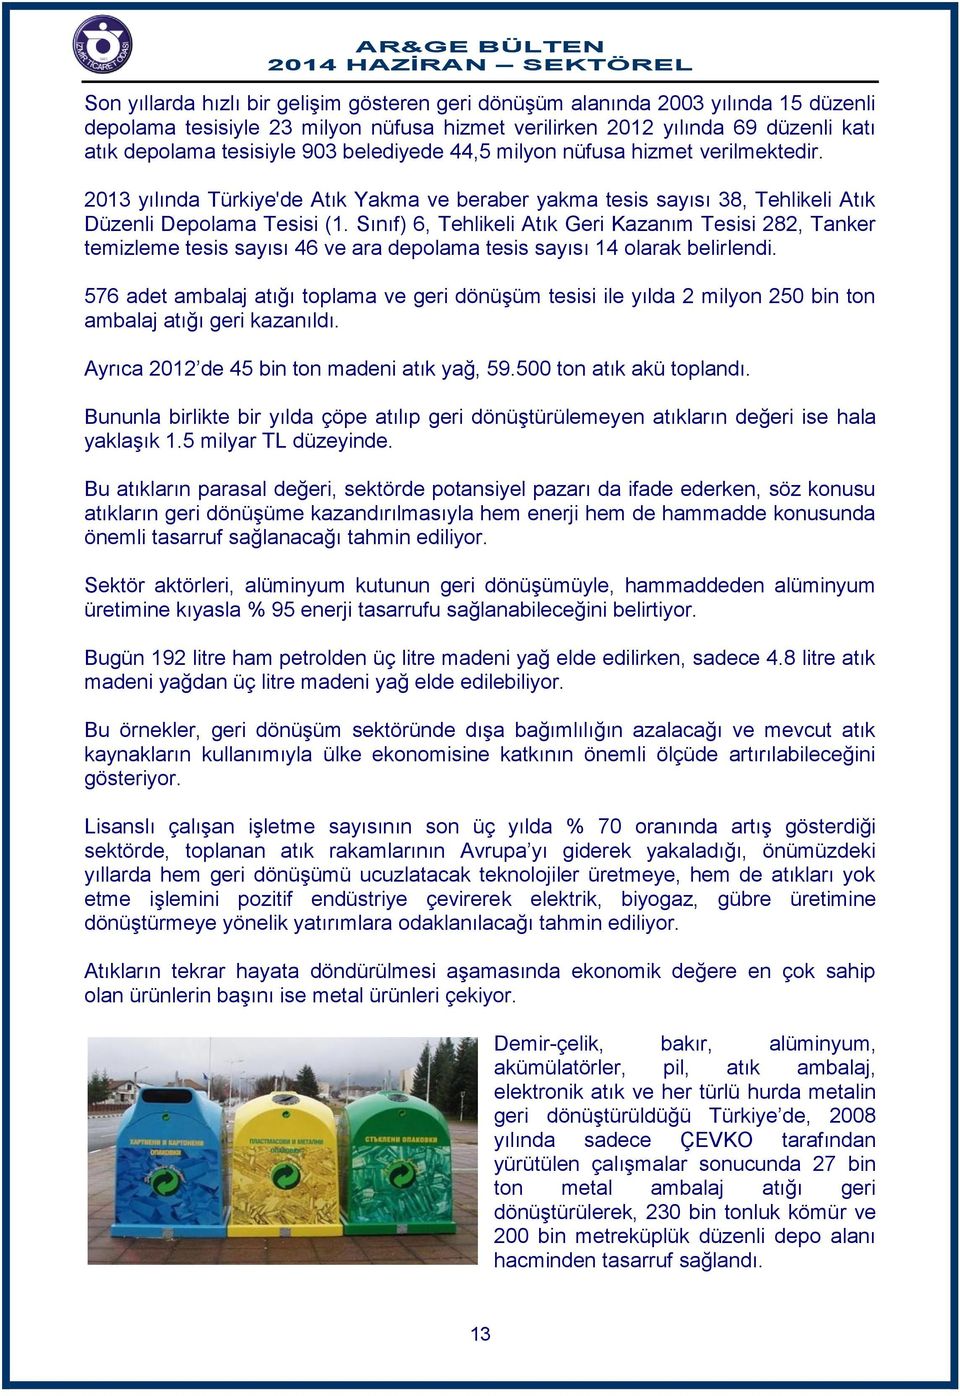 Sınıf) 6, Tehlikeli Atık Geri Kazanım Tesisi 282, Tanker temizleme tesis sayısı 46 ve ara depolama tesis sayısı 14 olarak belirlendi.